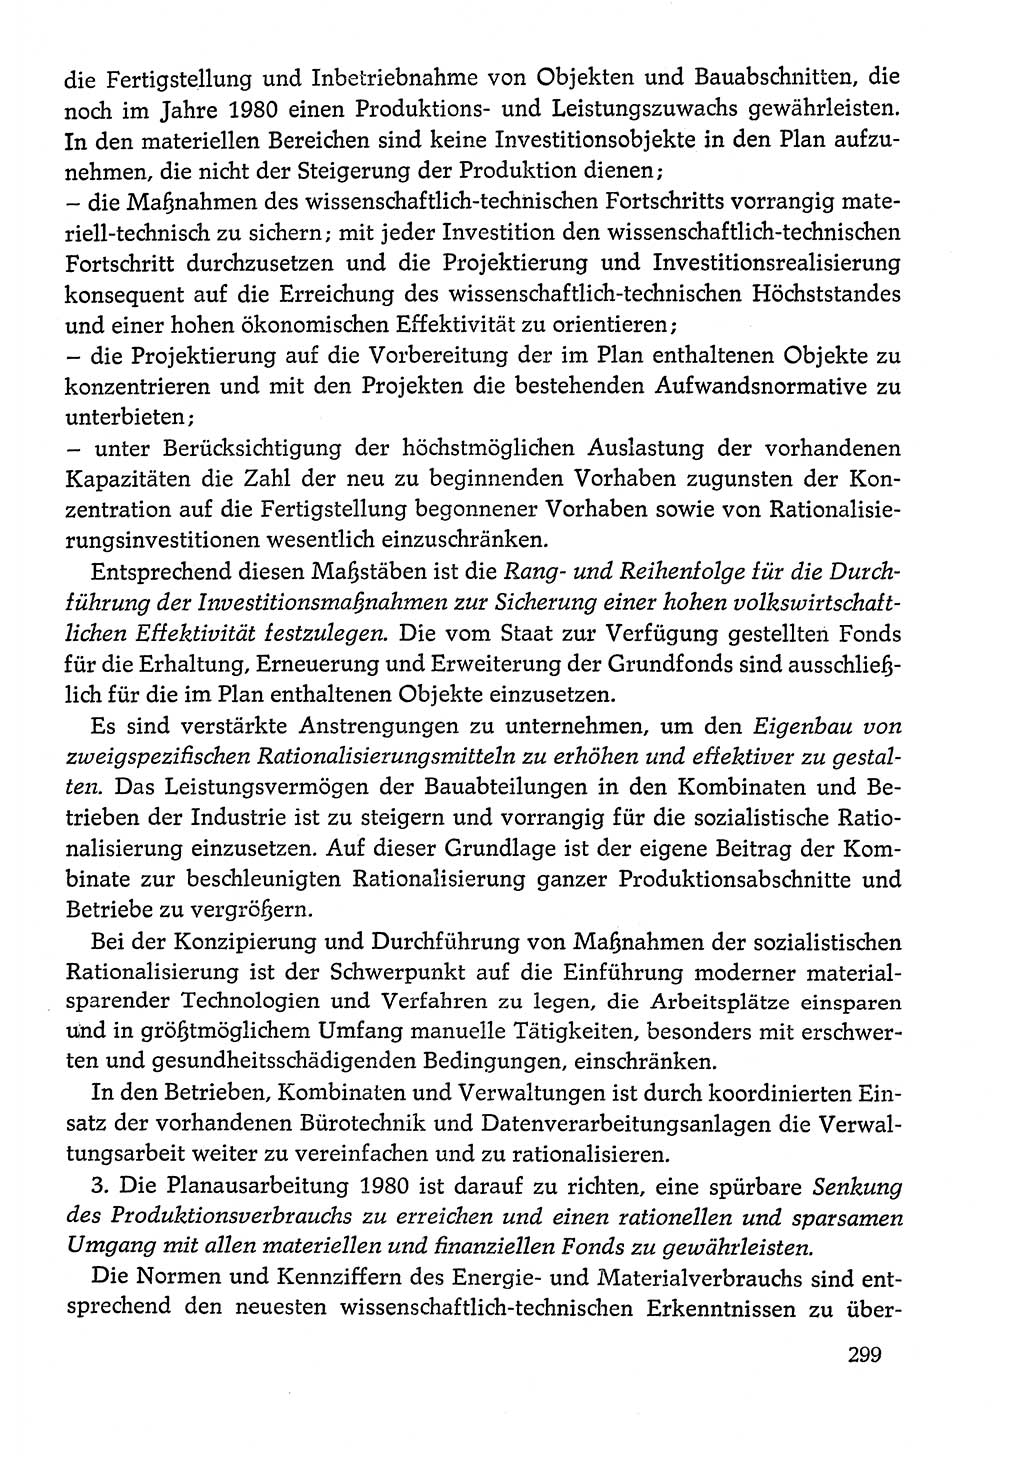 Dokumente der Sozialistischen Einheitspartei Deutschlands (SED) [Deutsche Demokratische Republik (DDR)] 1978-1979, Seite 299 (Dok. SED DDR 1978-1979, S. 299)